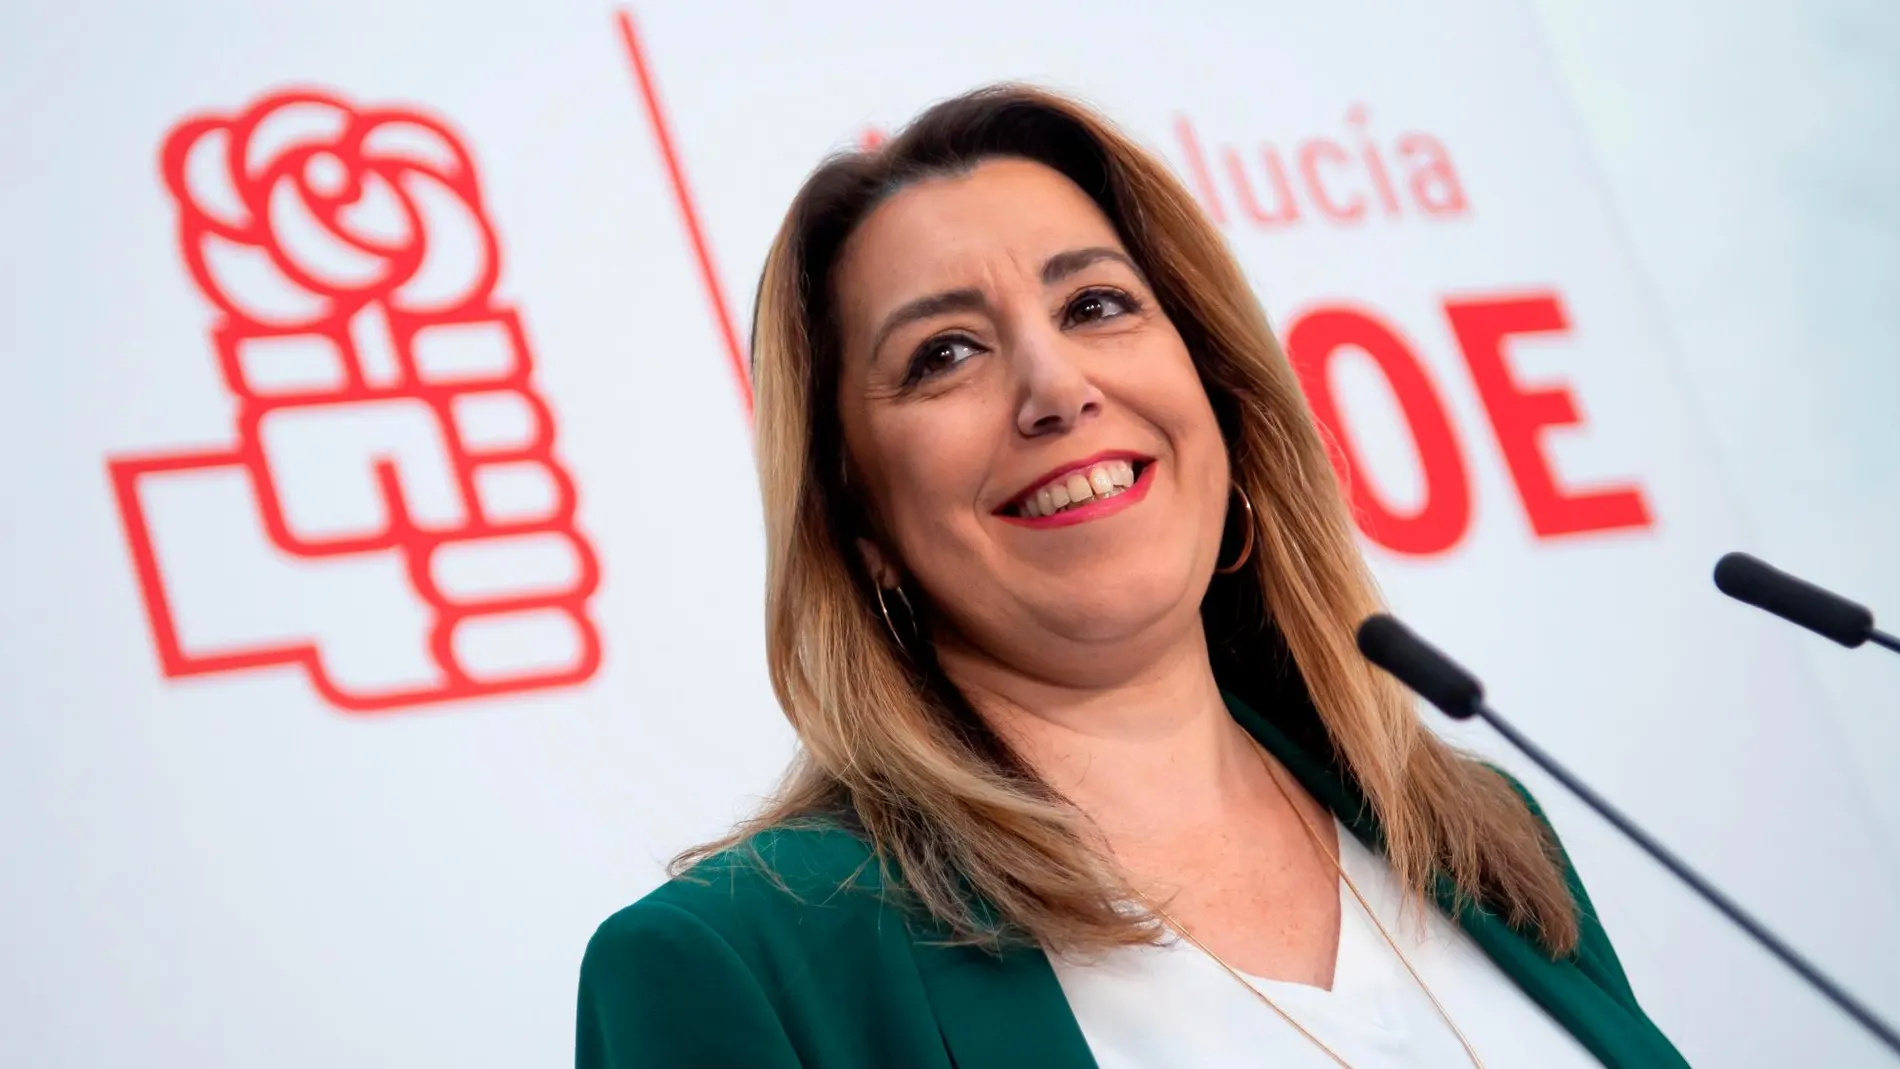 La secretaria general del PSOE-A, Susana Díaz, ha anunciado hoy en rueda de prensa en Sevilla que se quedará al frente del partido para liderar la oposición